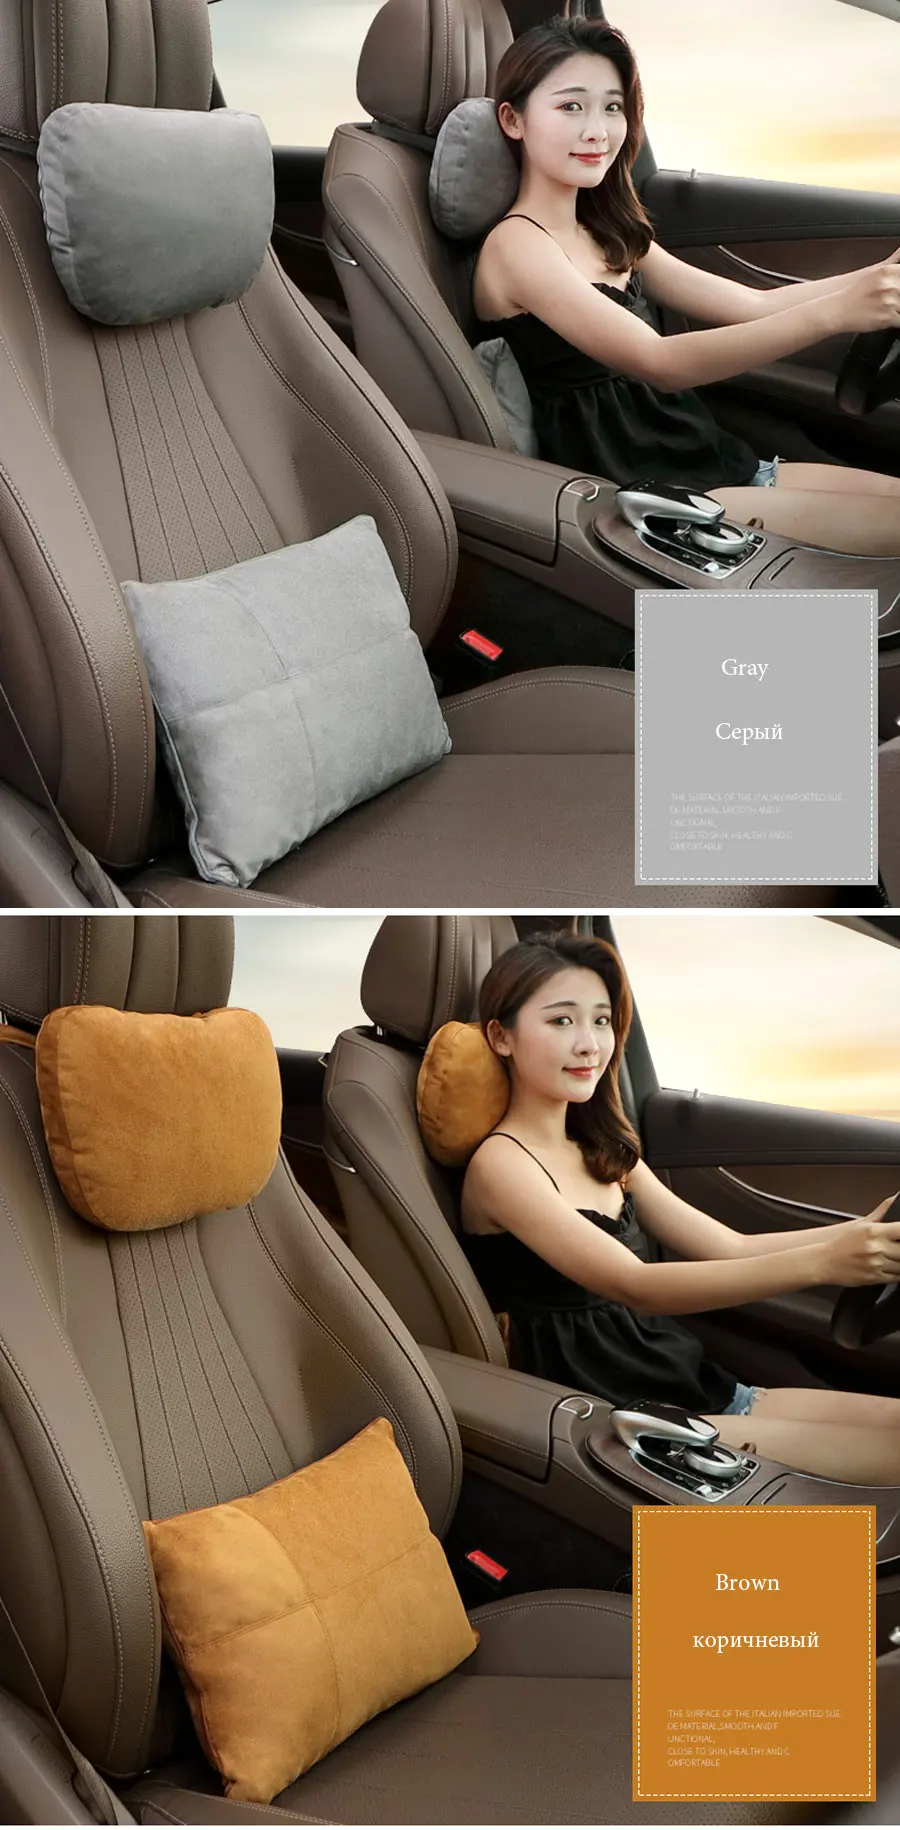 2 шт., универсальный автомобильный подголовник S класса, ультра мягкая подушка для Mercedes Benz Maybach, защитные поясничные подушки для автомобильного сиденья